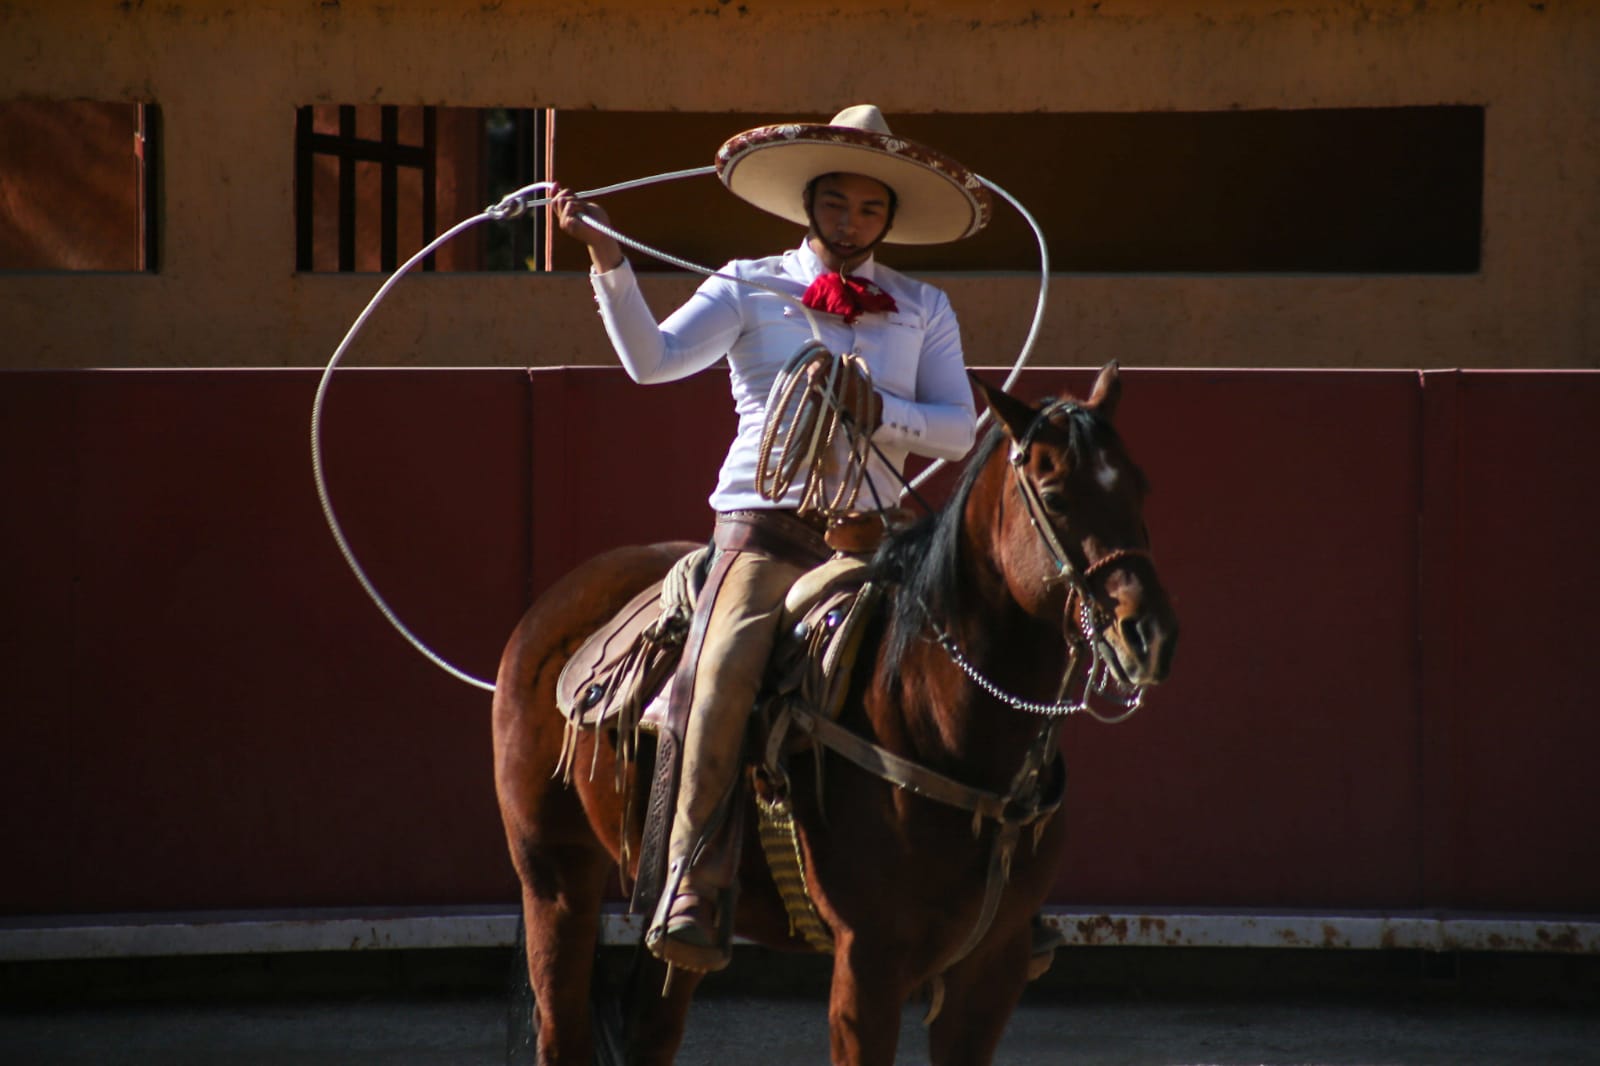 Mostrarán a turistas mundiales los colores y sabores de una "Real Experiencia Mexicana"